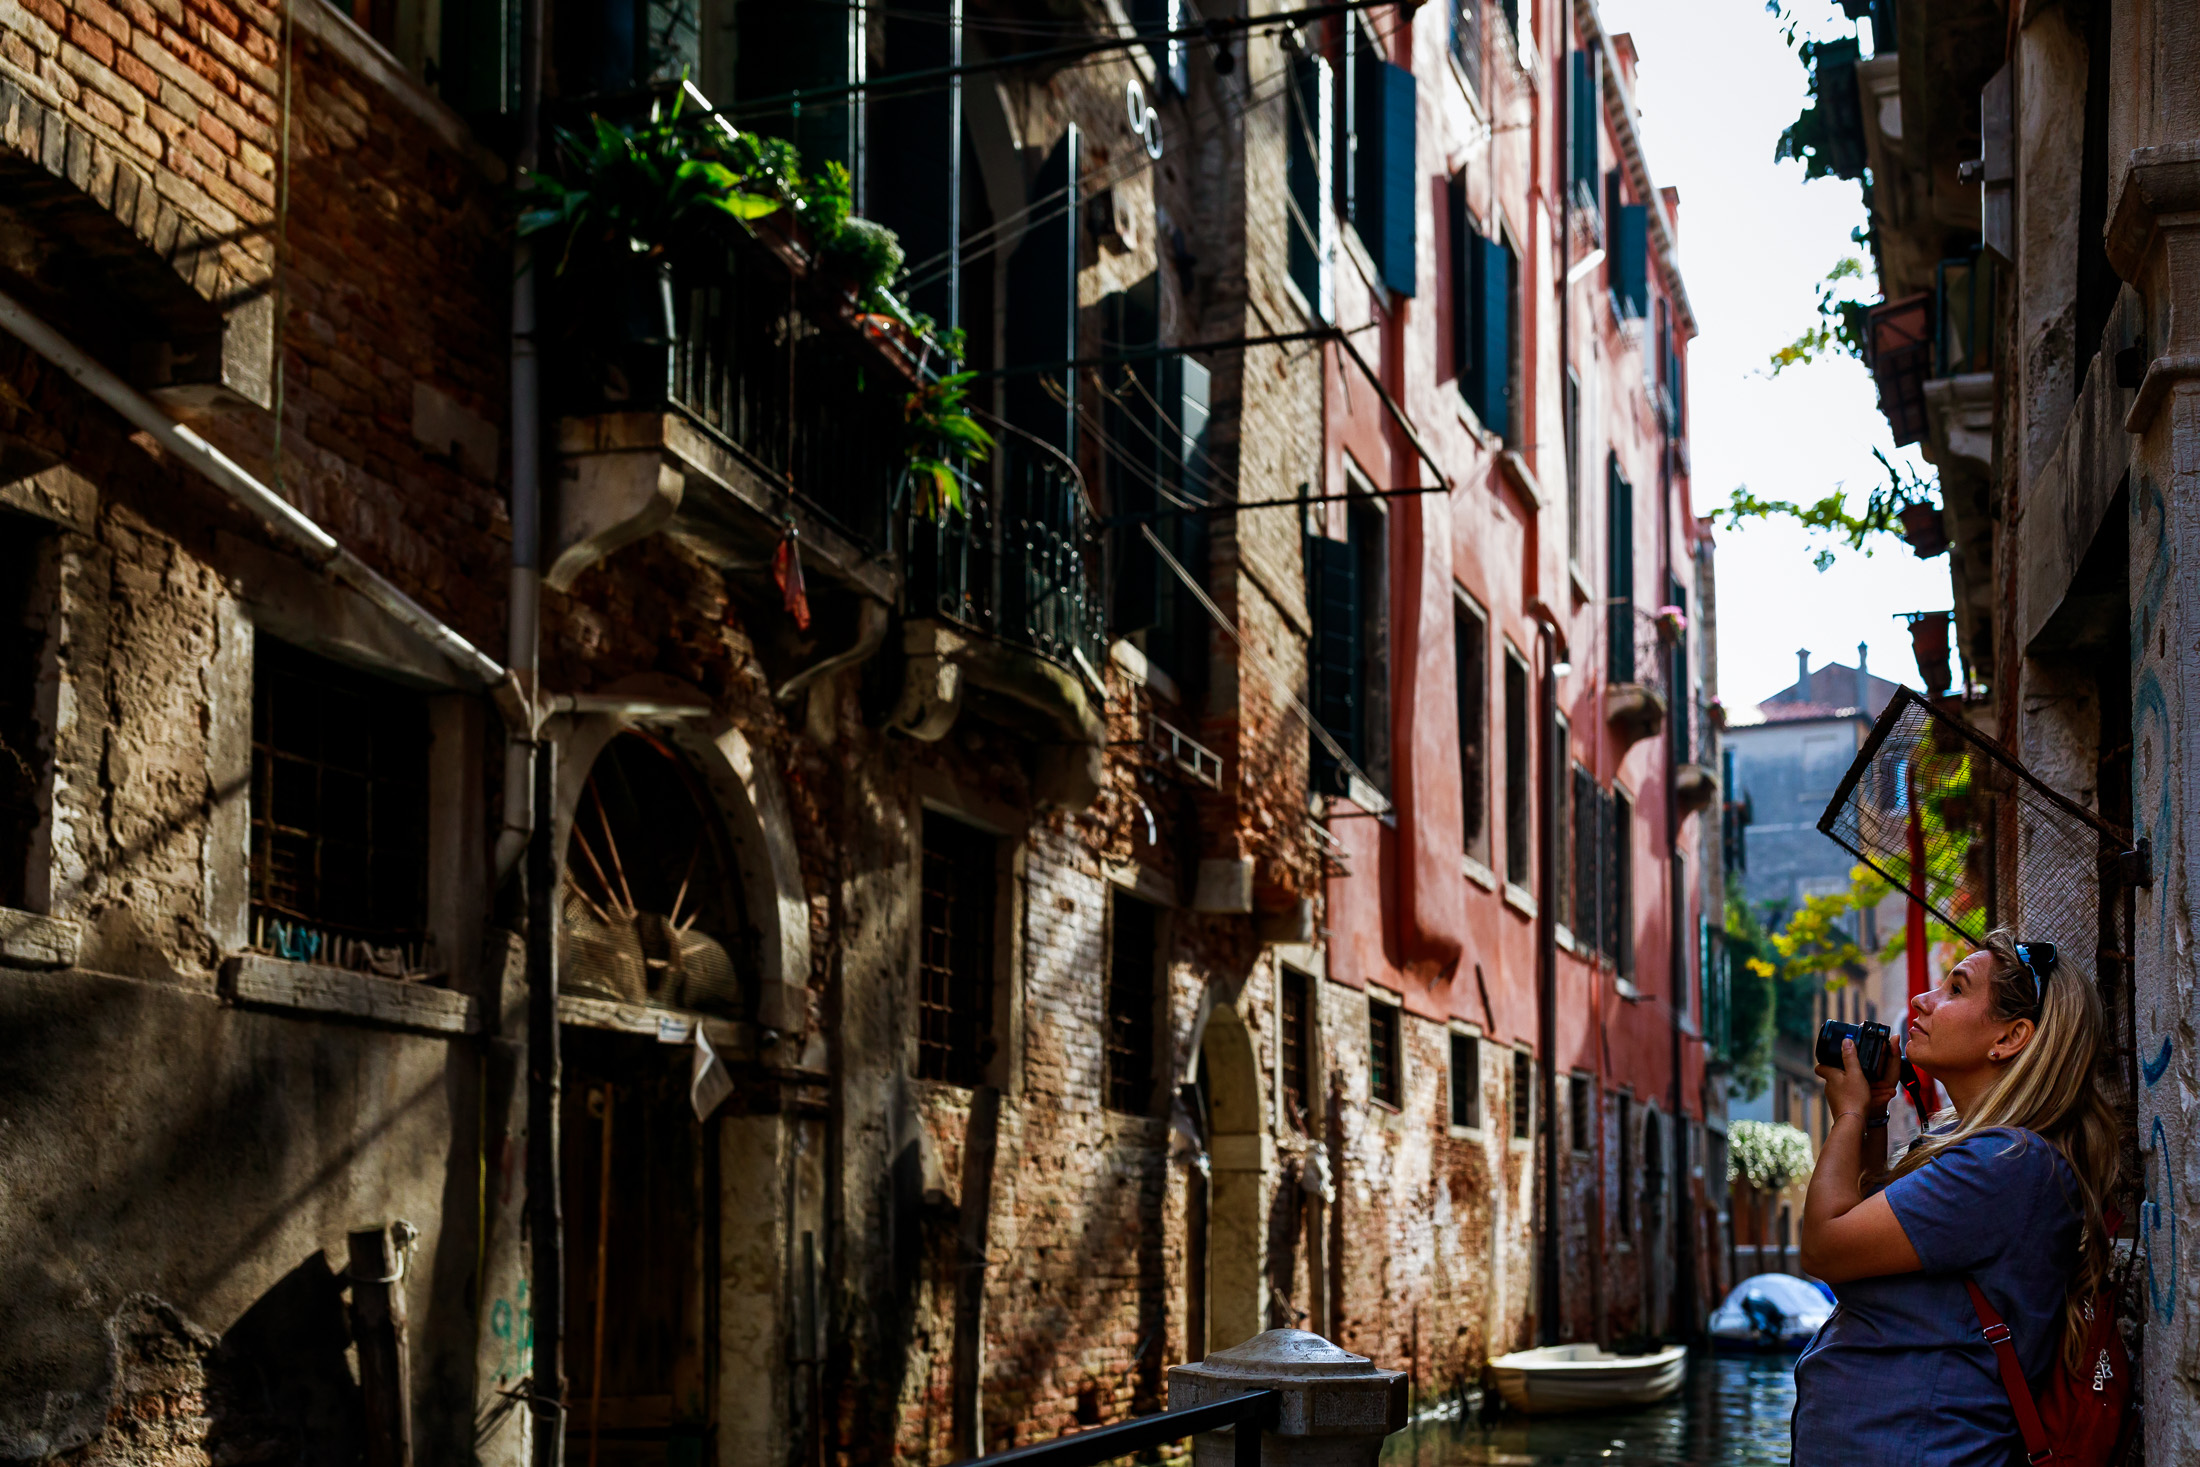 Loveshoot Venetie | Loveshoot Venice | Coupleshoot Venice | Day in the life italy